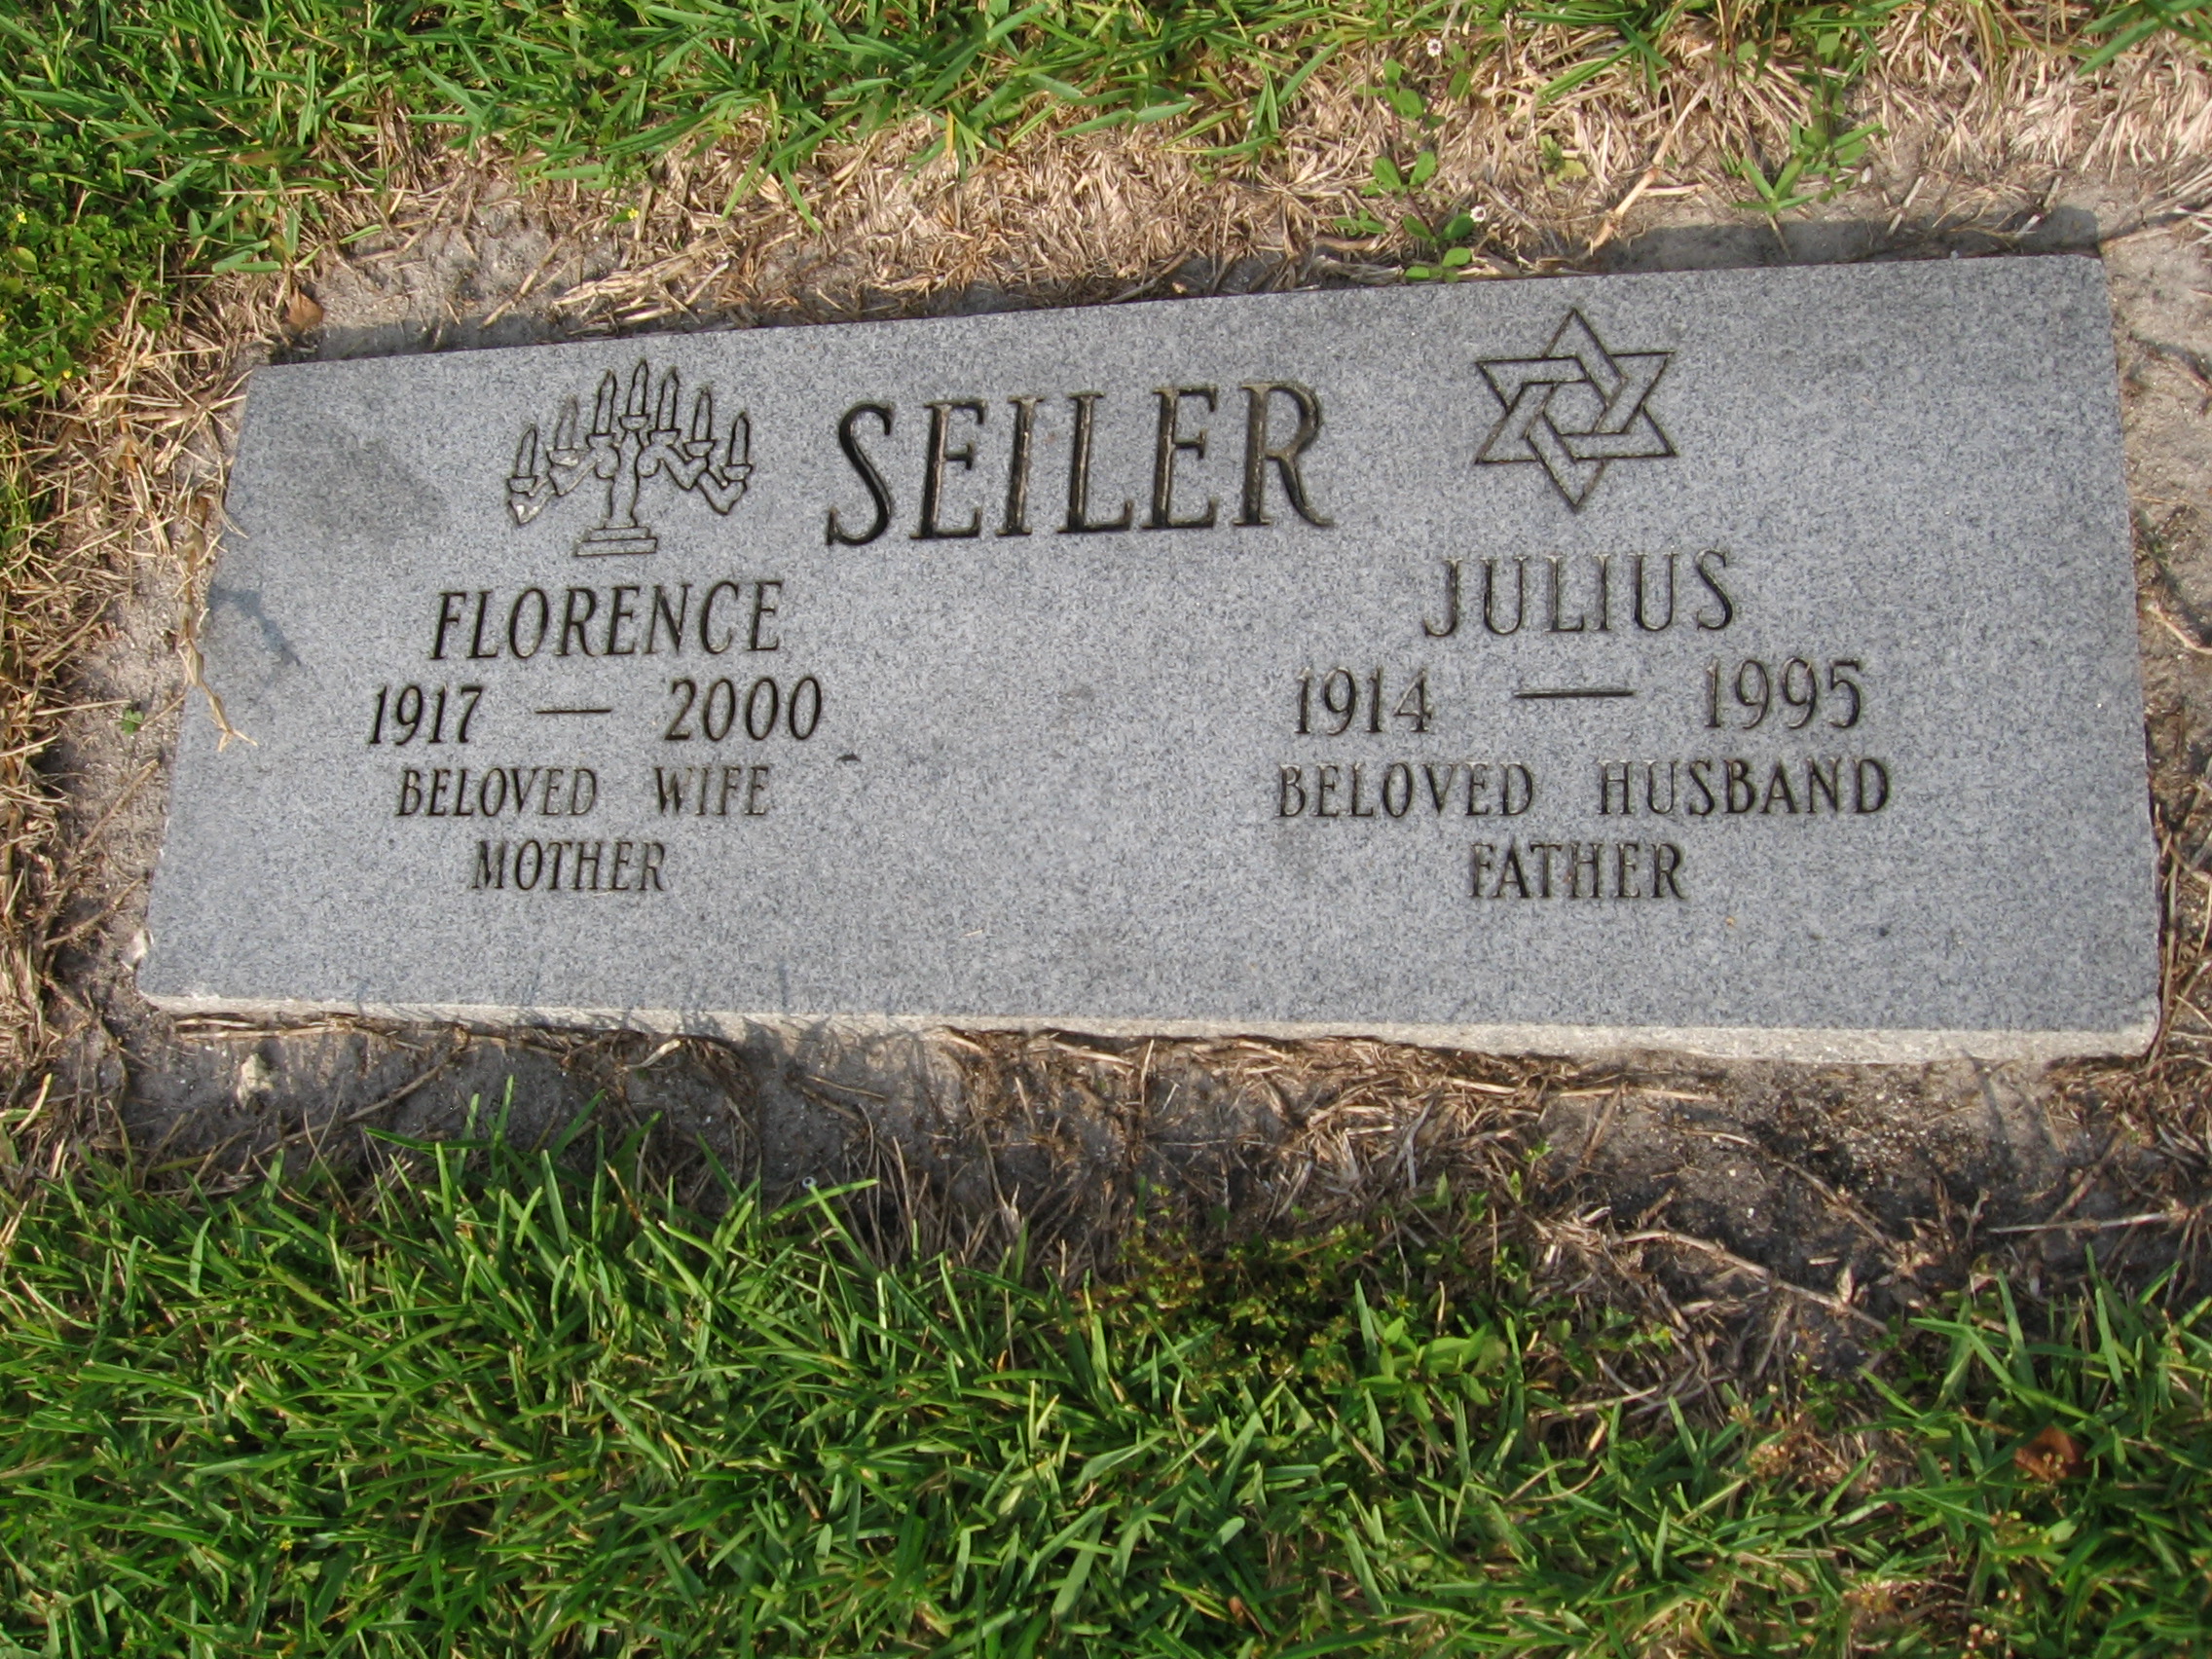 Julius Seiler